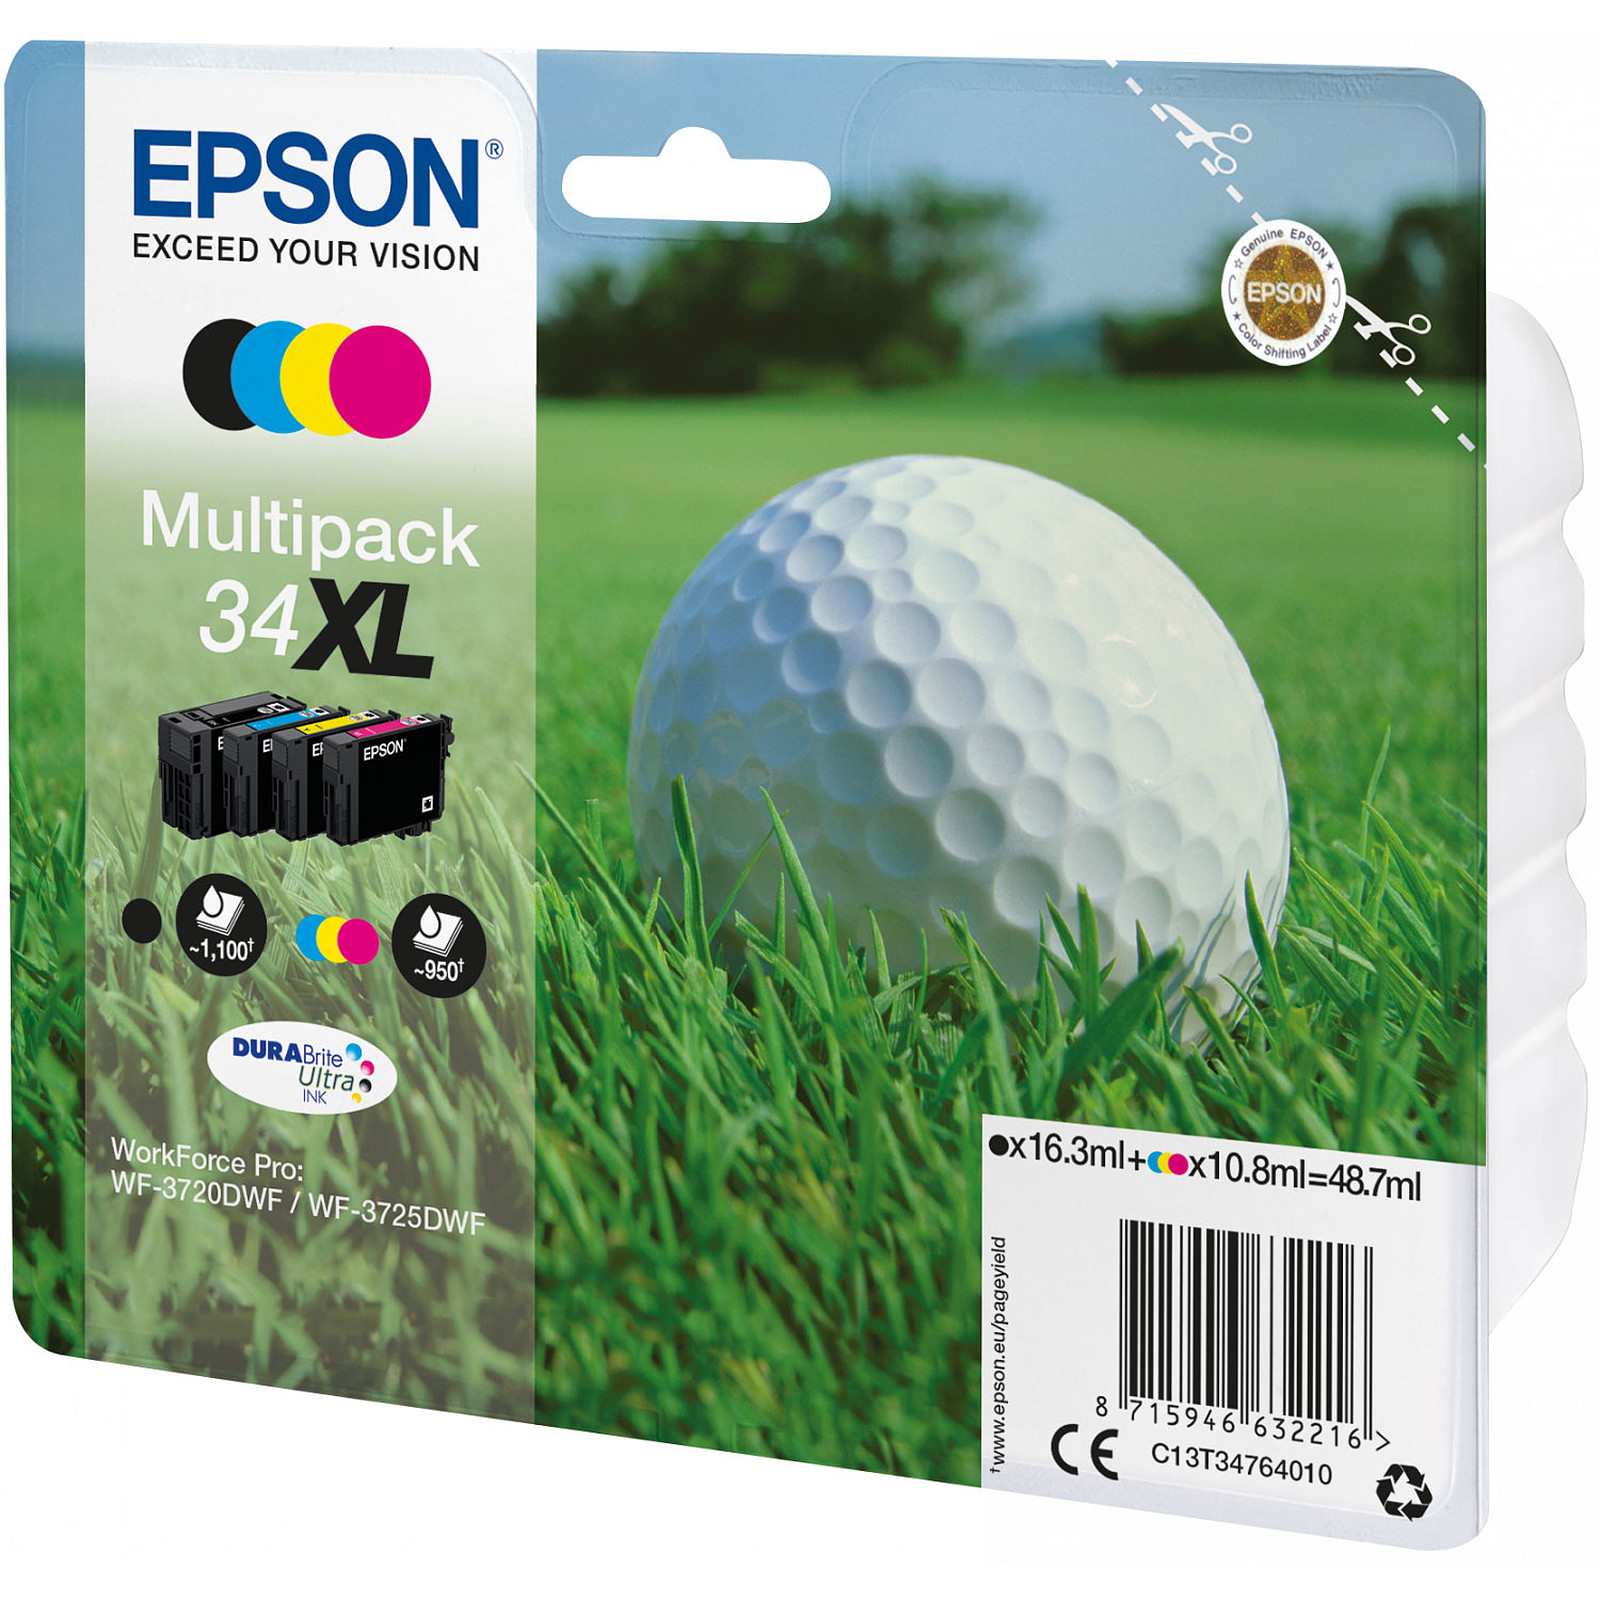 Epson Balle de Golf Multipack 34XL - Cartouche imprimante Epson